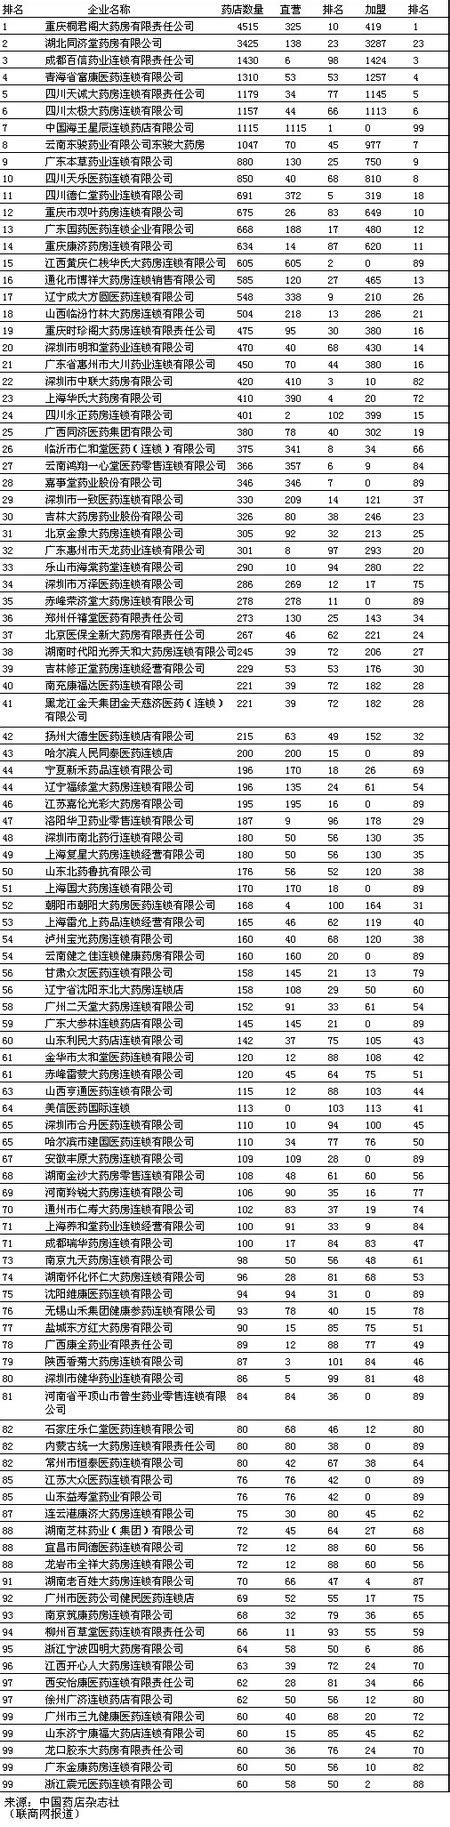 2006年中国连锁药店排行榜(分店数量)_联商网